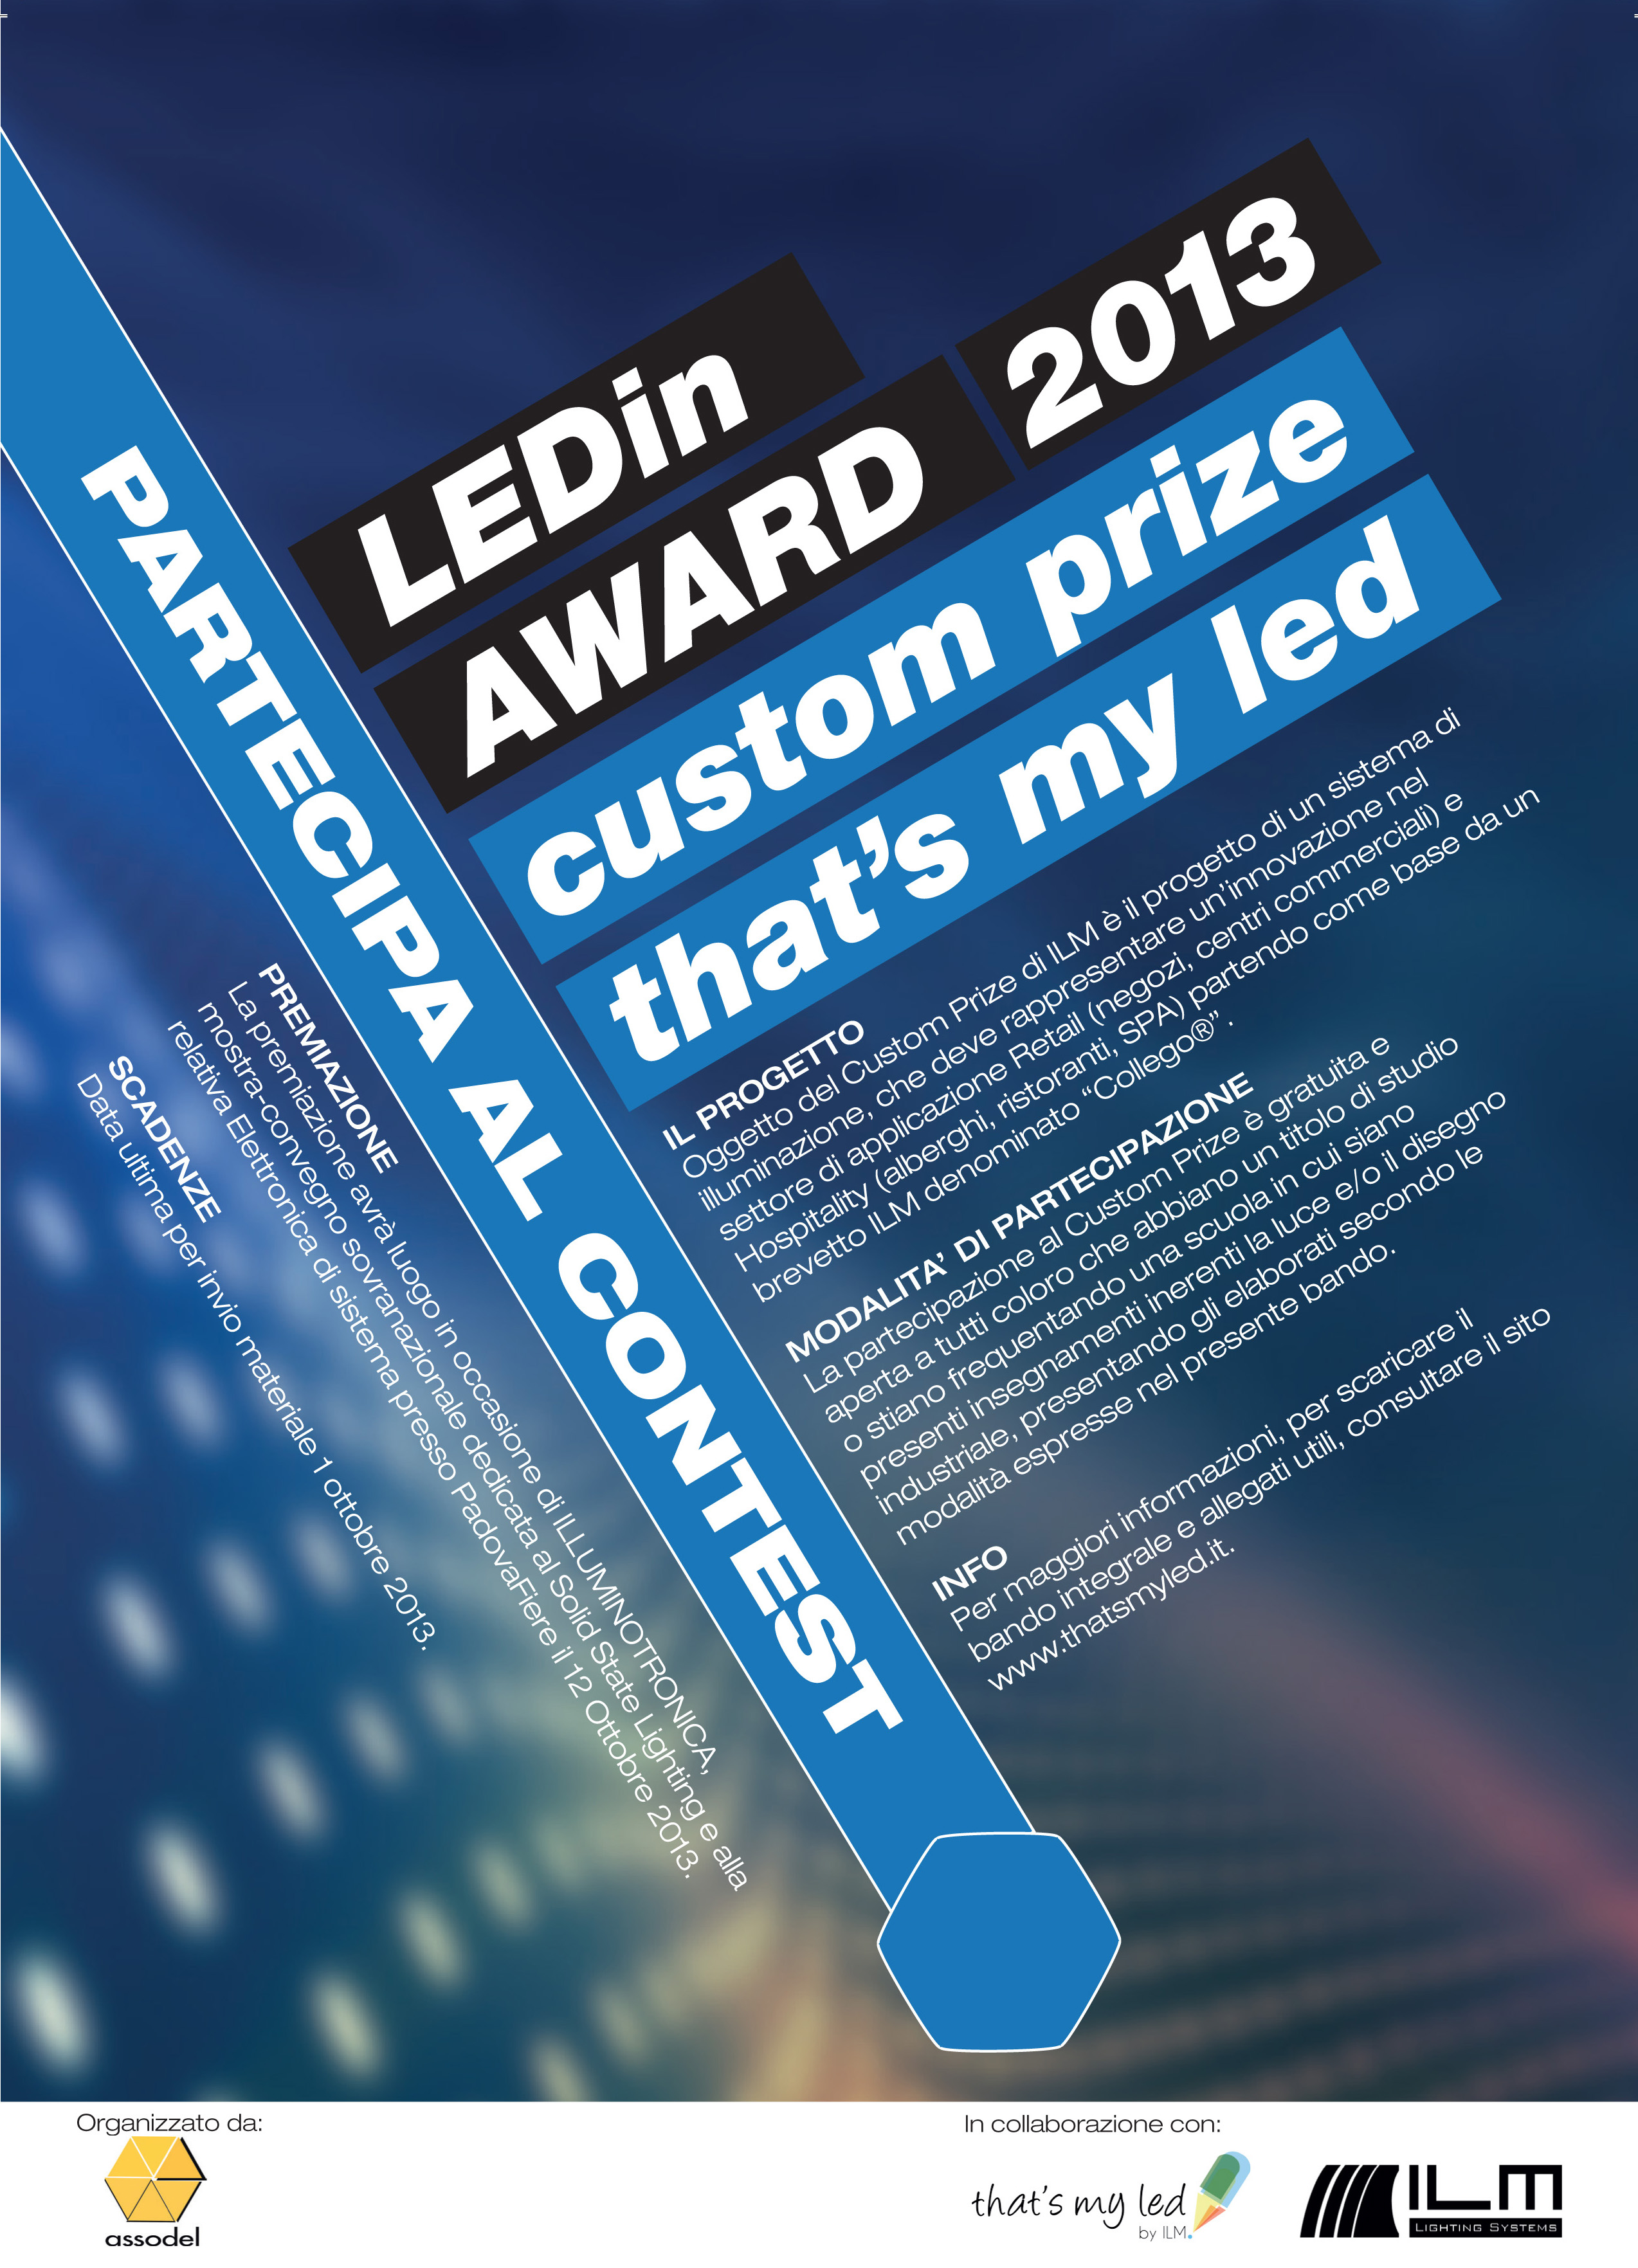 Ledin_Award_costumprize2013